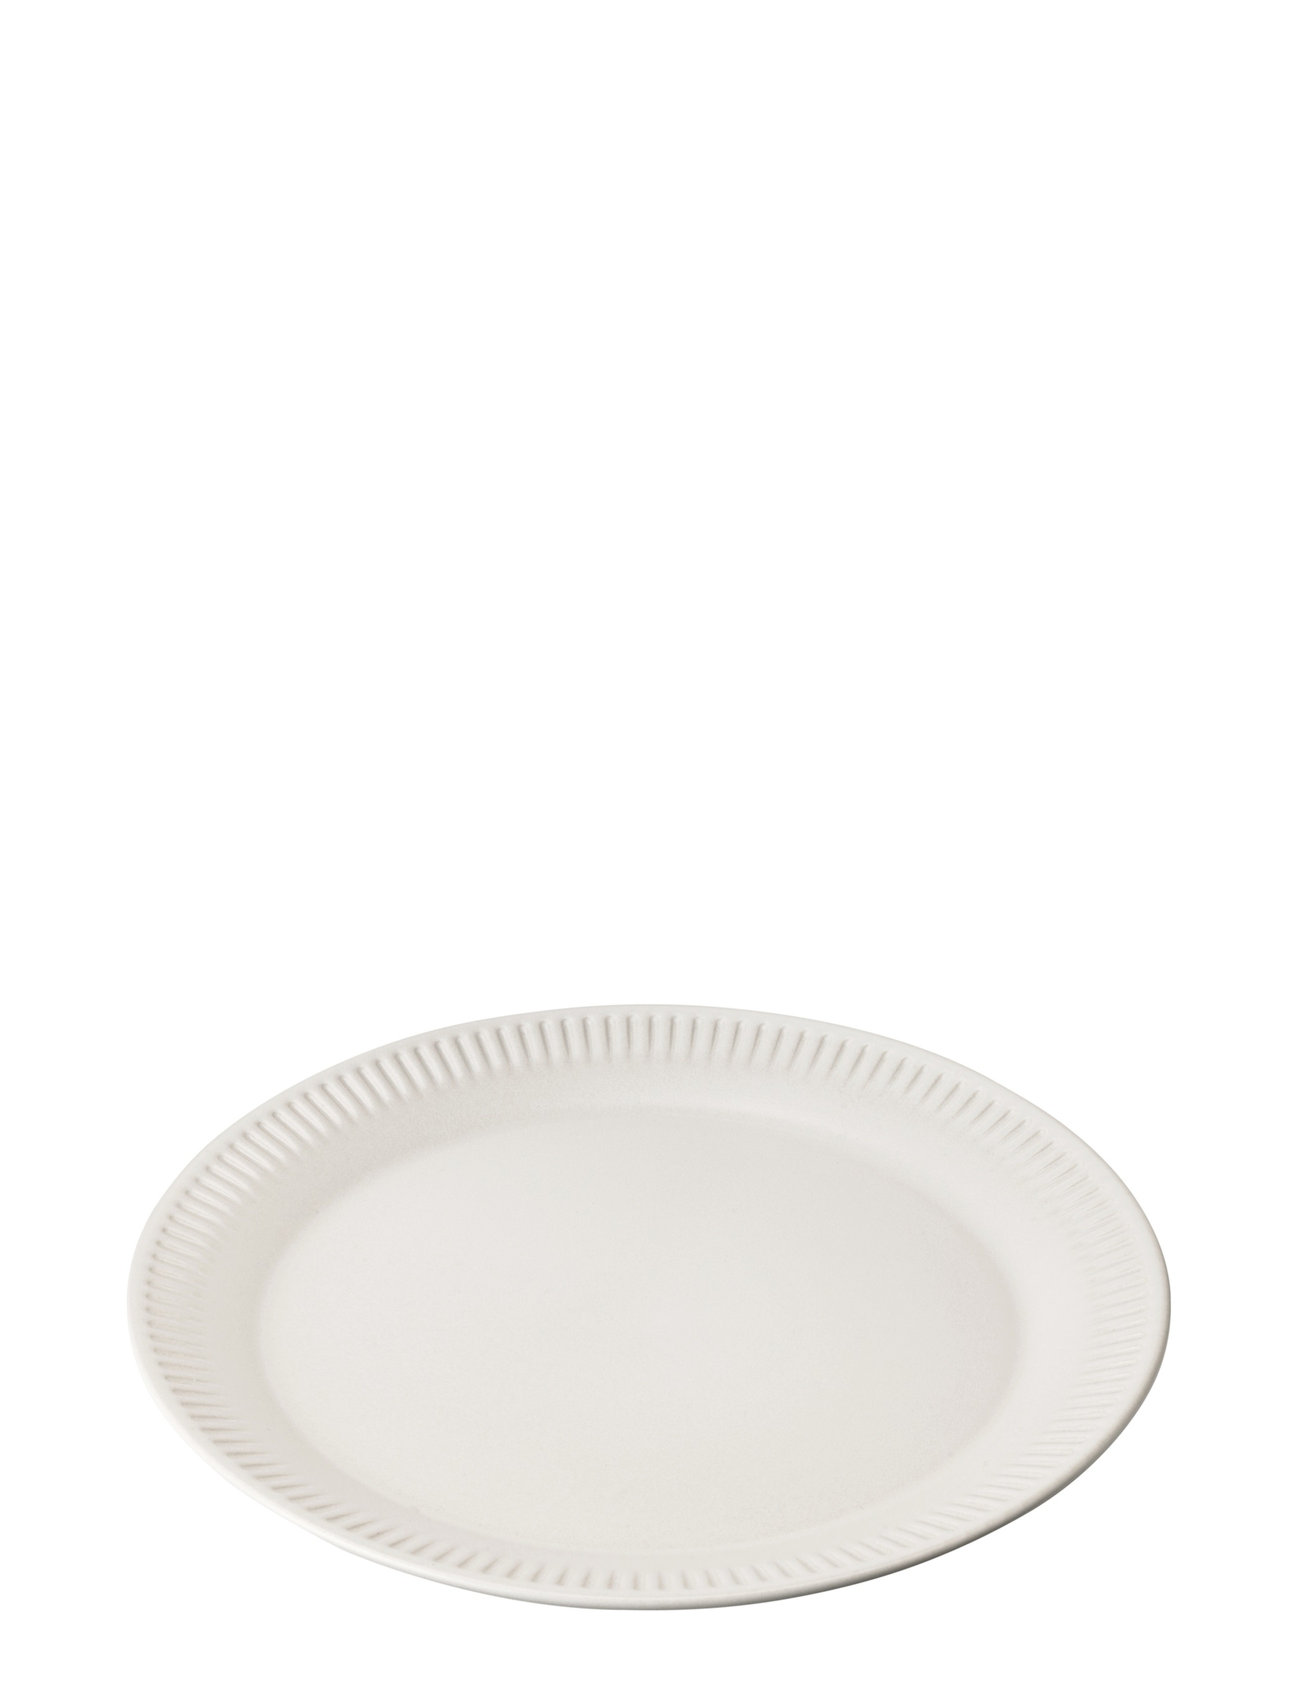 Knabstrup Tallerken Home Tableware Plates Small Plates White Knabstrup Keramik